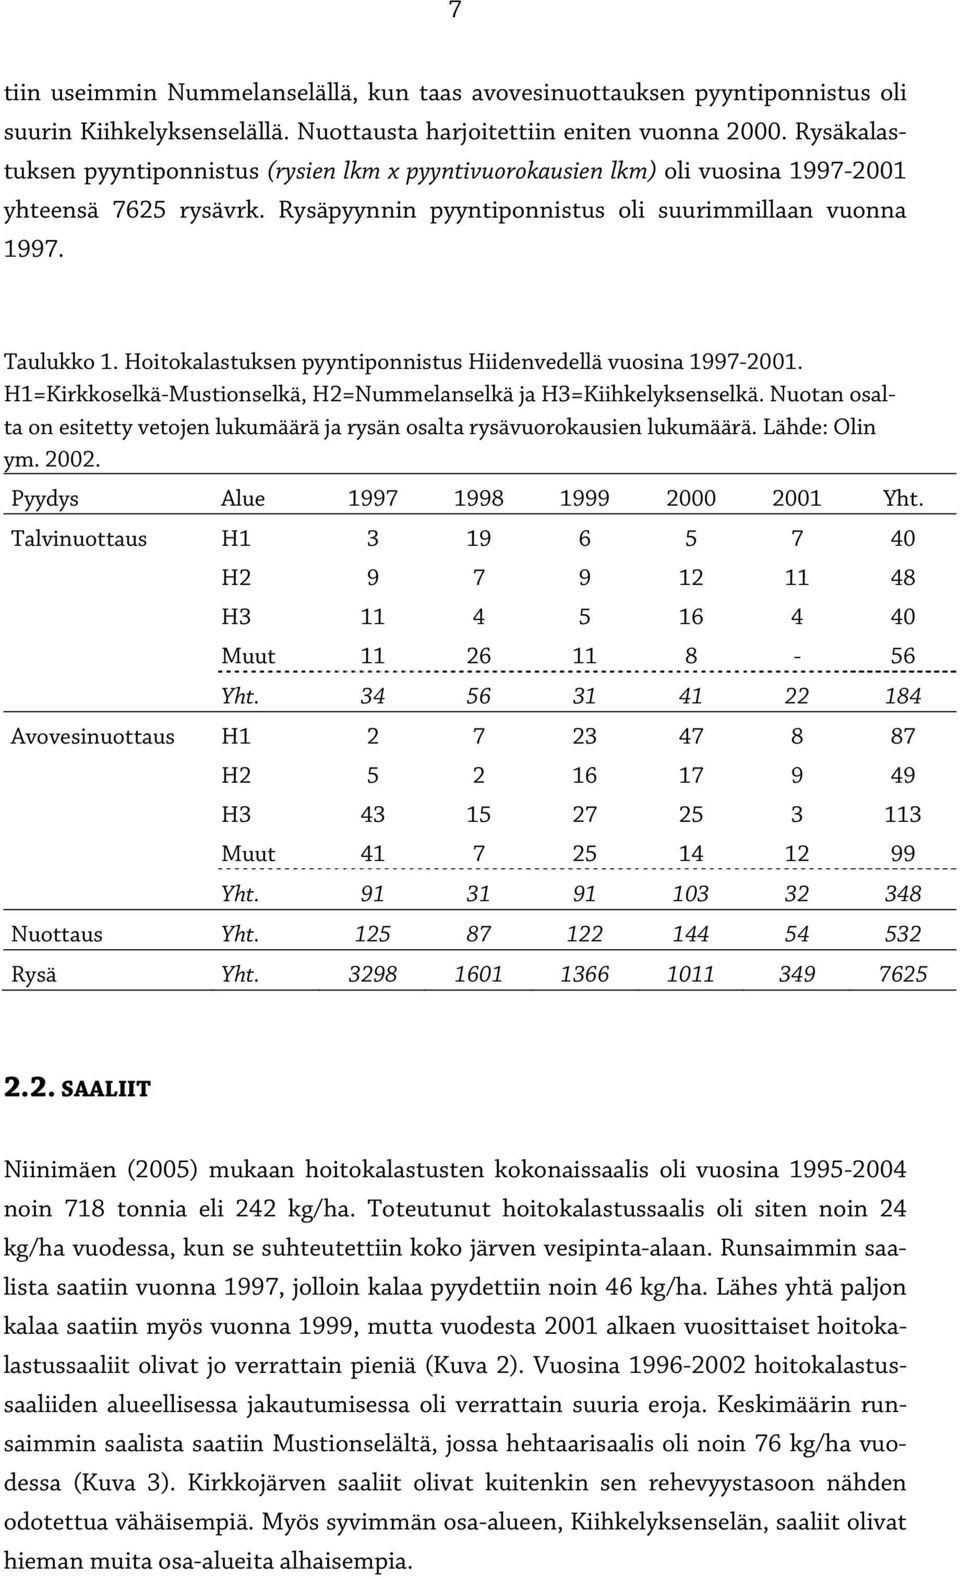 Hoitokalastuksen pyyntiponnistus Hiidenvedellä vuosina 1997-2001. H1=Kirkkoselkä-Mustionselkä, H2=Nummelanselkä ja H3=Kiihkelyksenselkä.